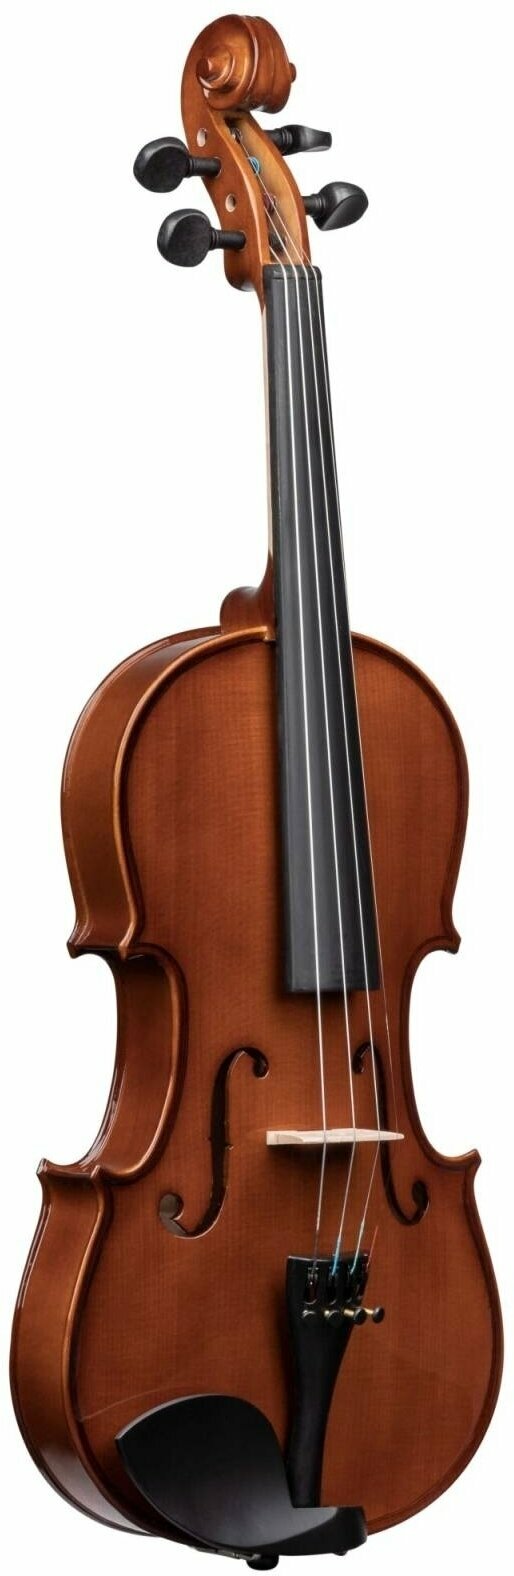 Akustična violina Vhienna VO34 STUDENT 3/4